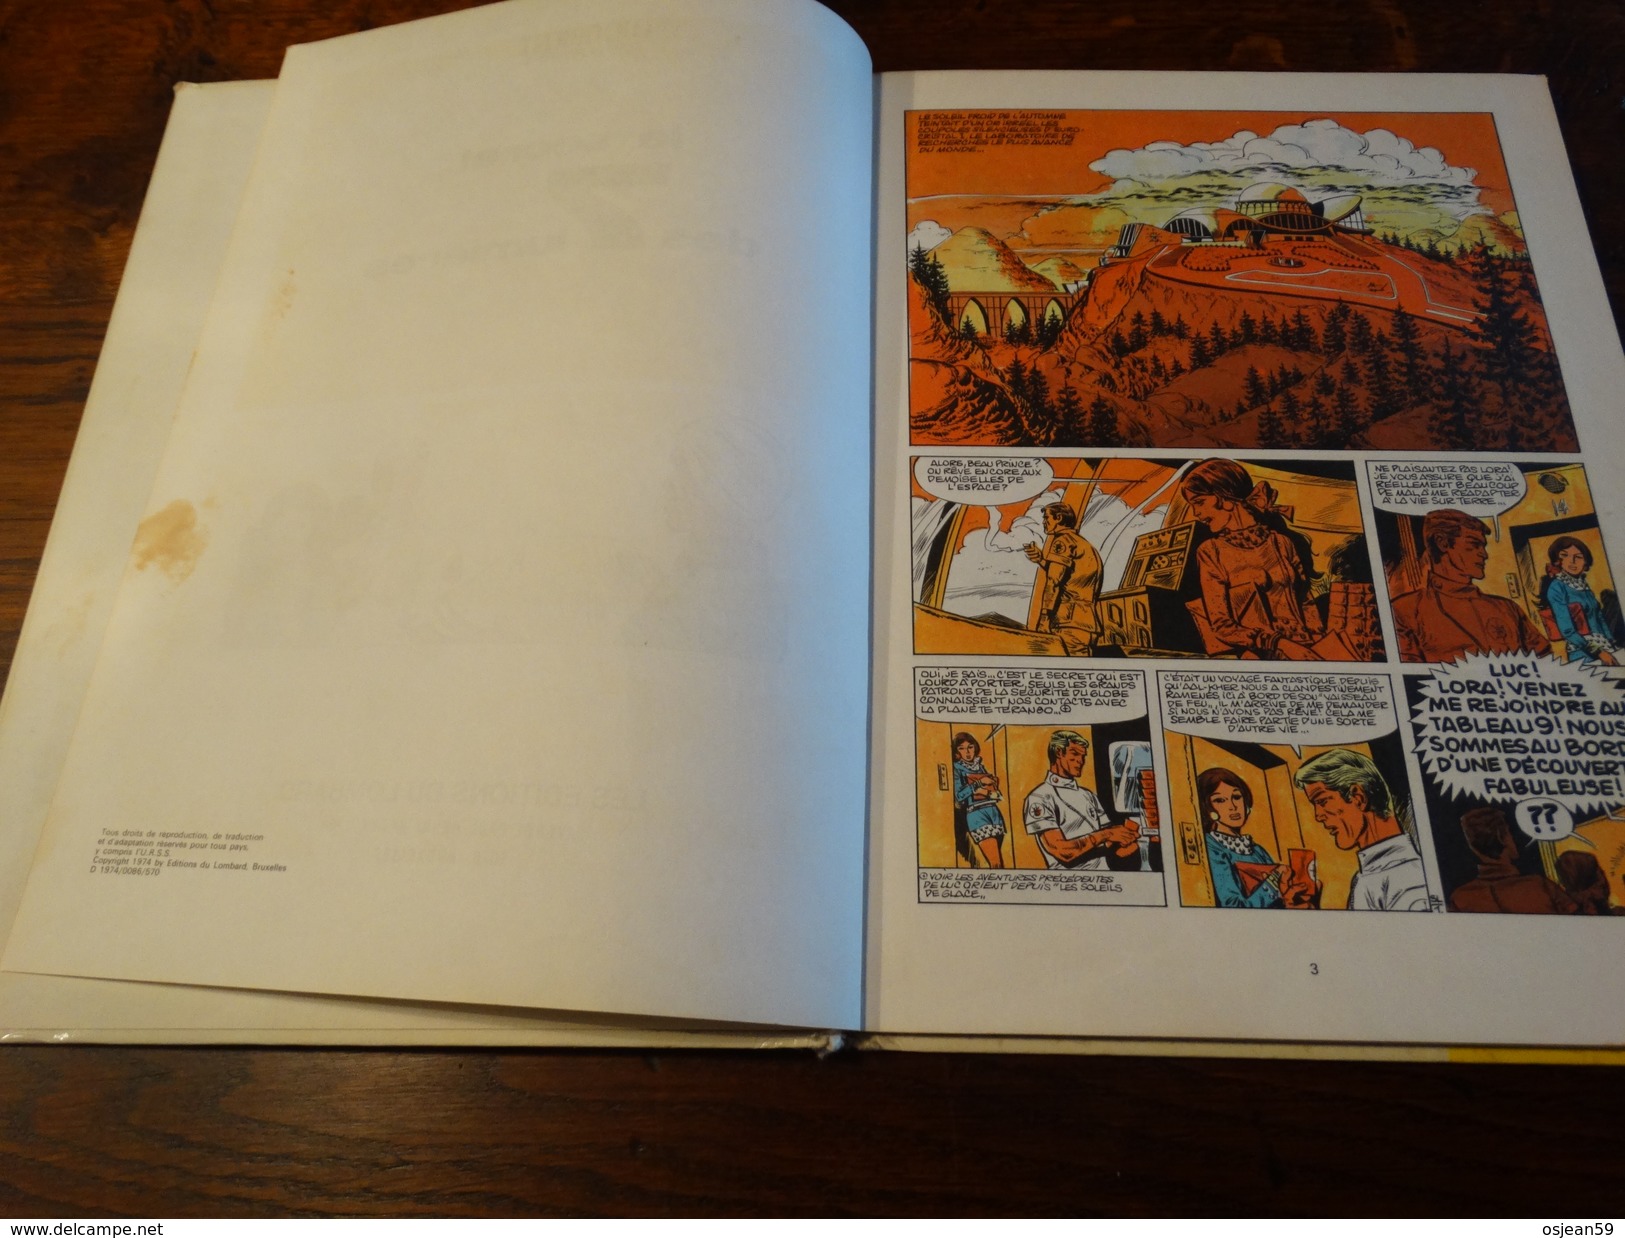 Le Secret Des 7 Lumières.........une Histoire Du Journal Tintin - éditions Du Lombard 1974 - Luc Orient